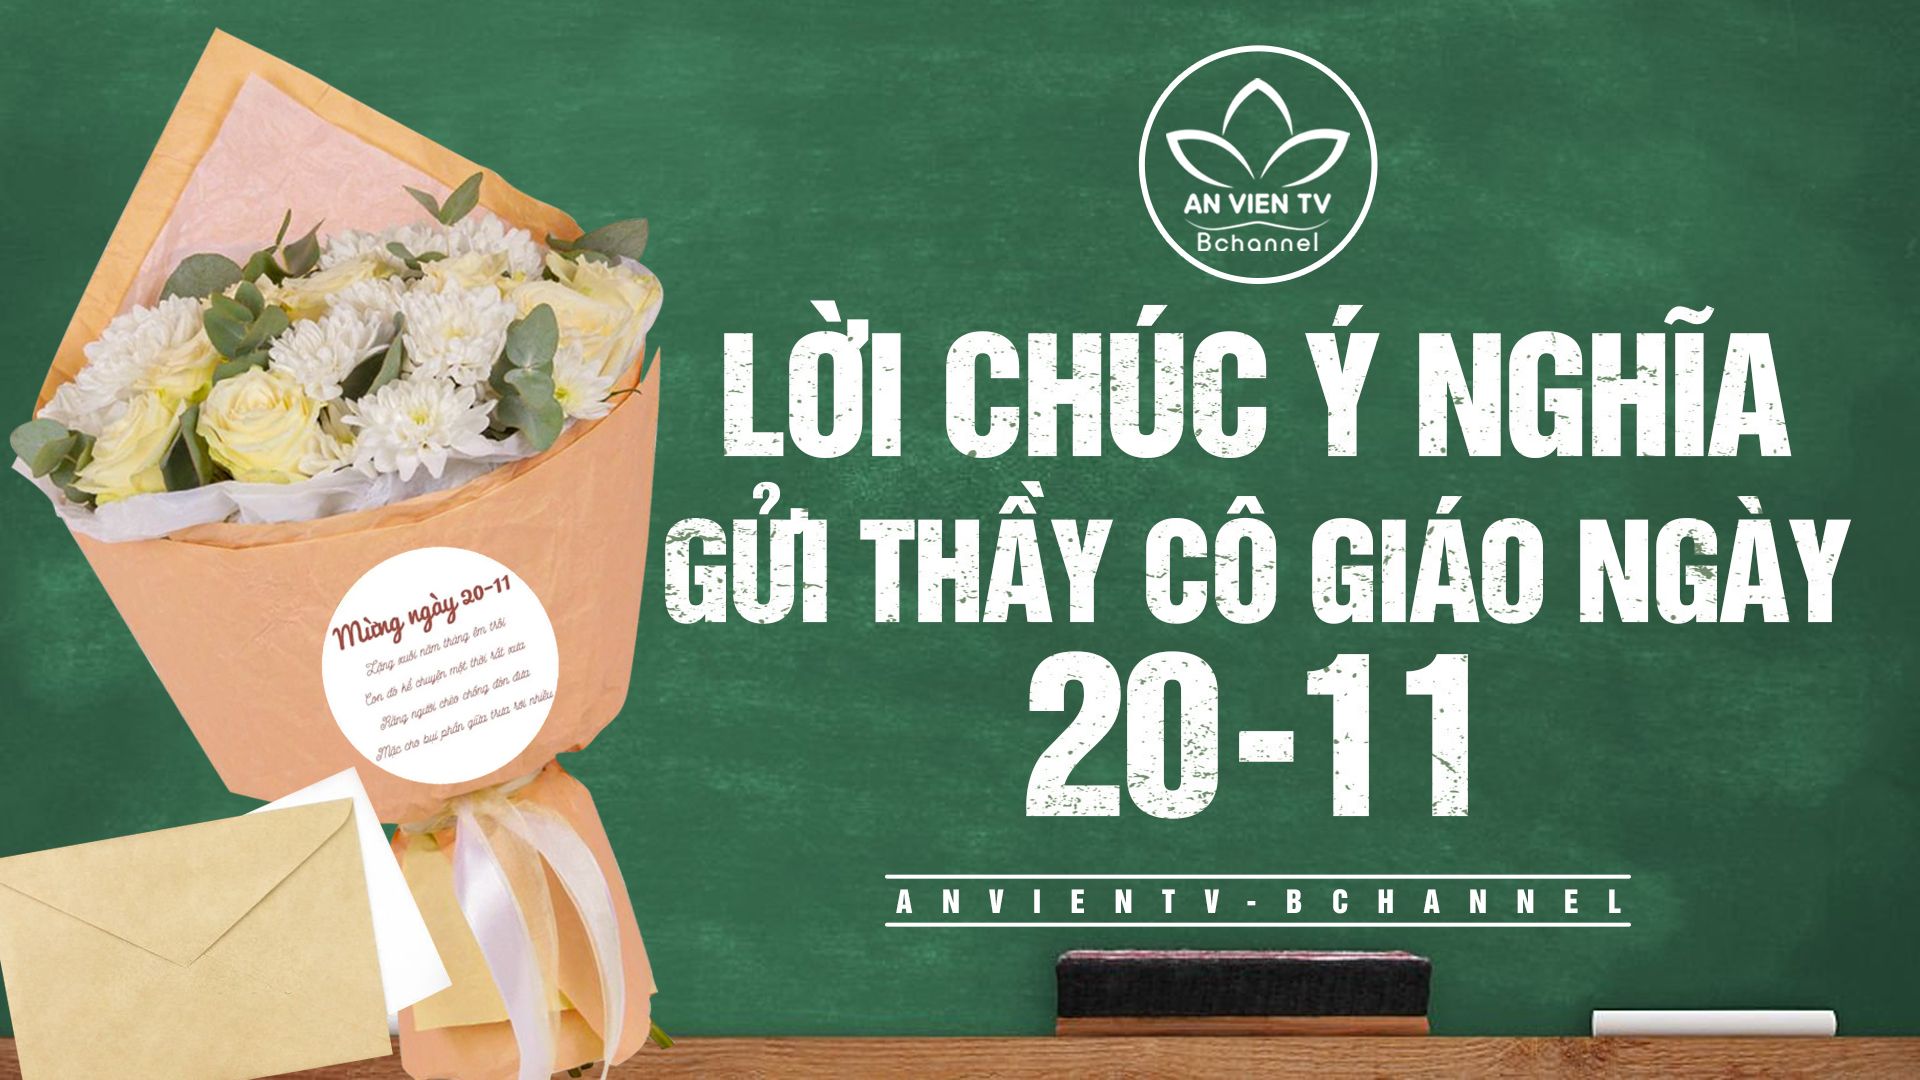 Hãy xem hình về lời chúc 20/11 để cảm nhận sự ấm áp và ý nghĩa của ngày Nhà giáo Việt Nam. Chúc mừng ngày 20/11 đến với tất cả các thầy cô giáo và các em học sinh trên khắp đất nước!